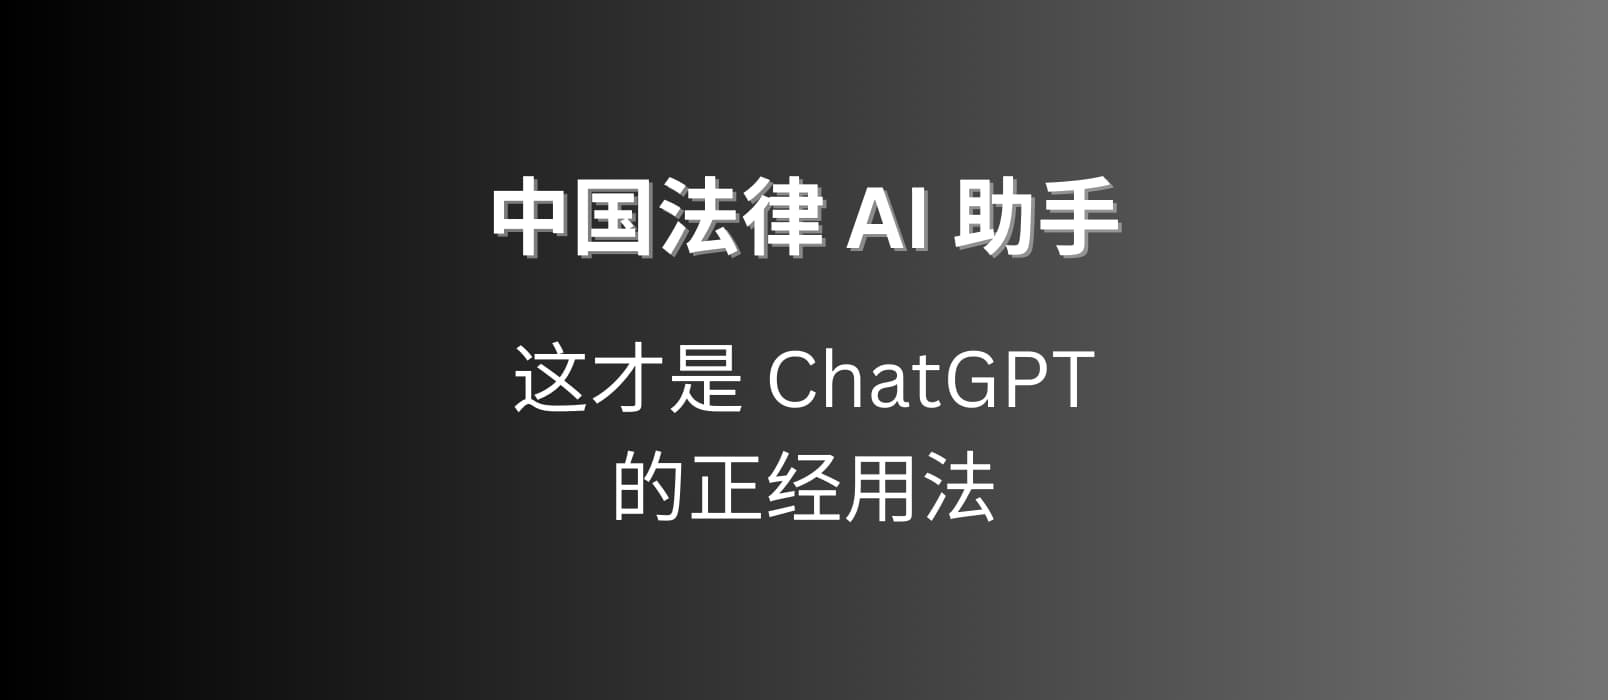 把数据喂给 ChatGPT，做了一个[中国法律 AI 助手] 